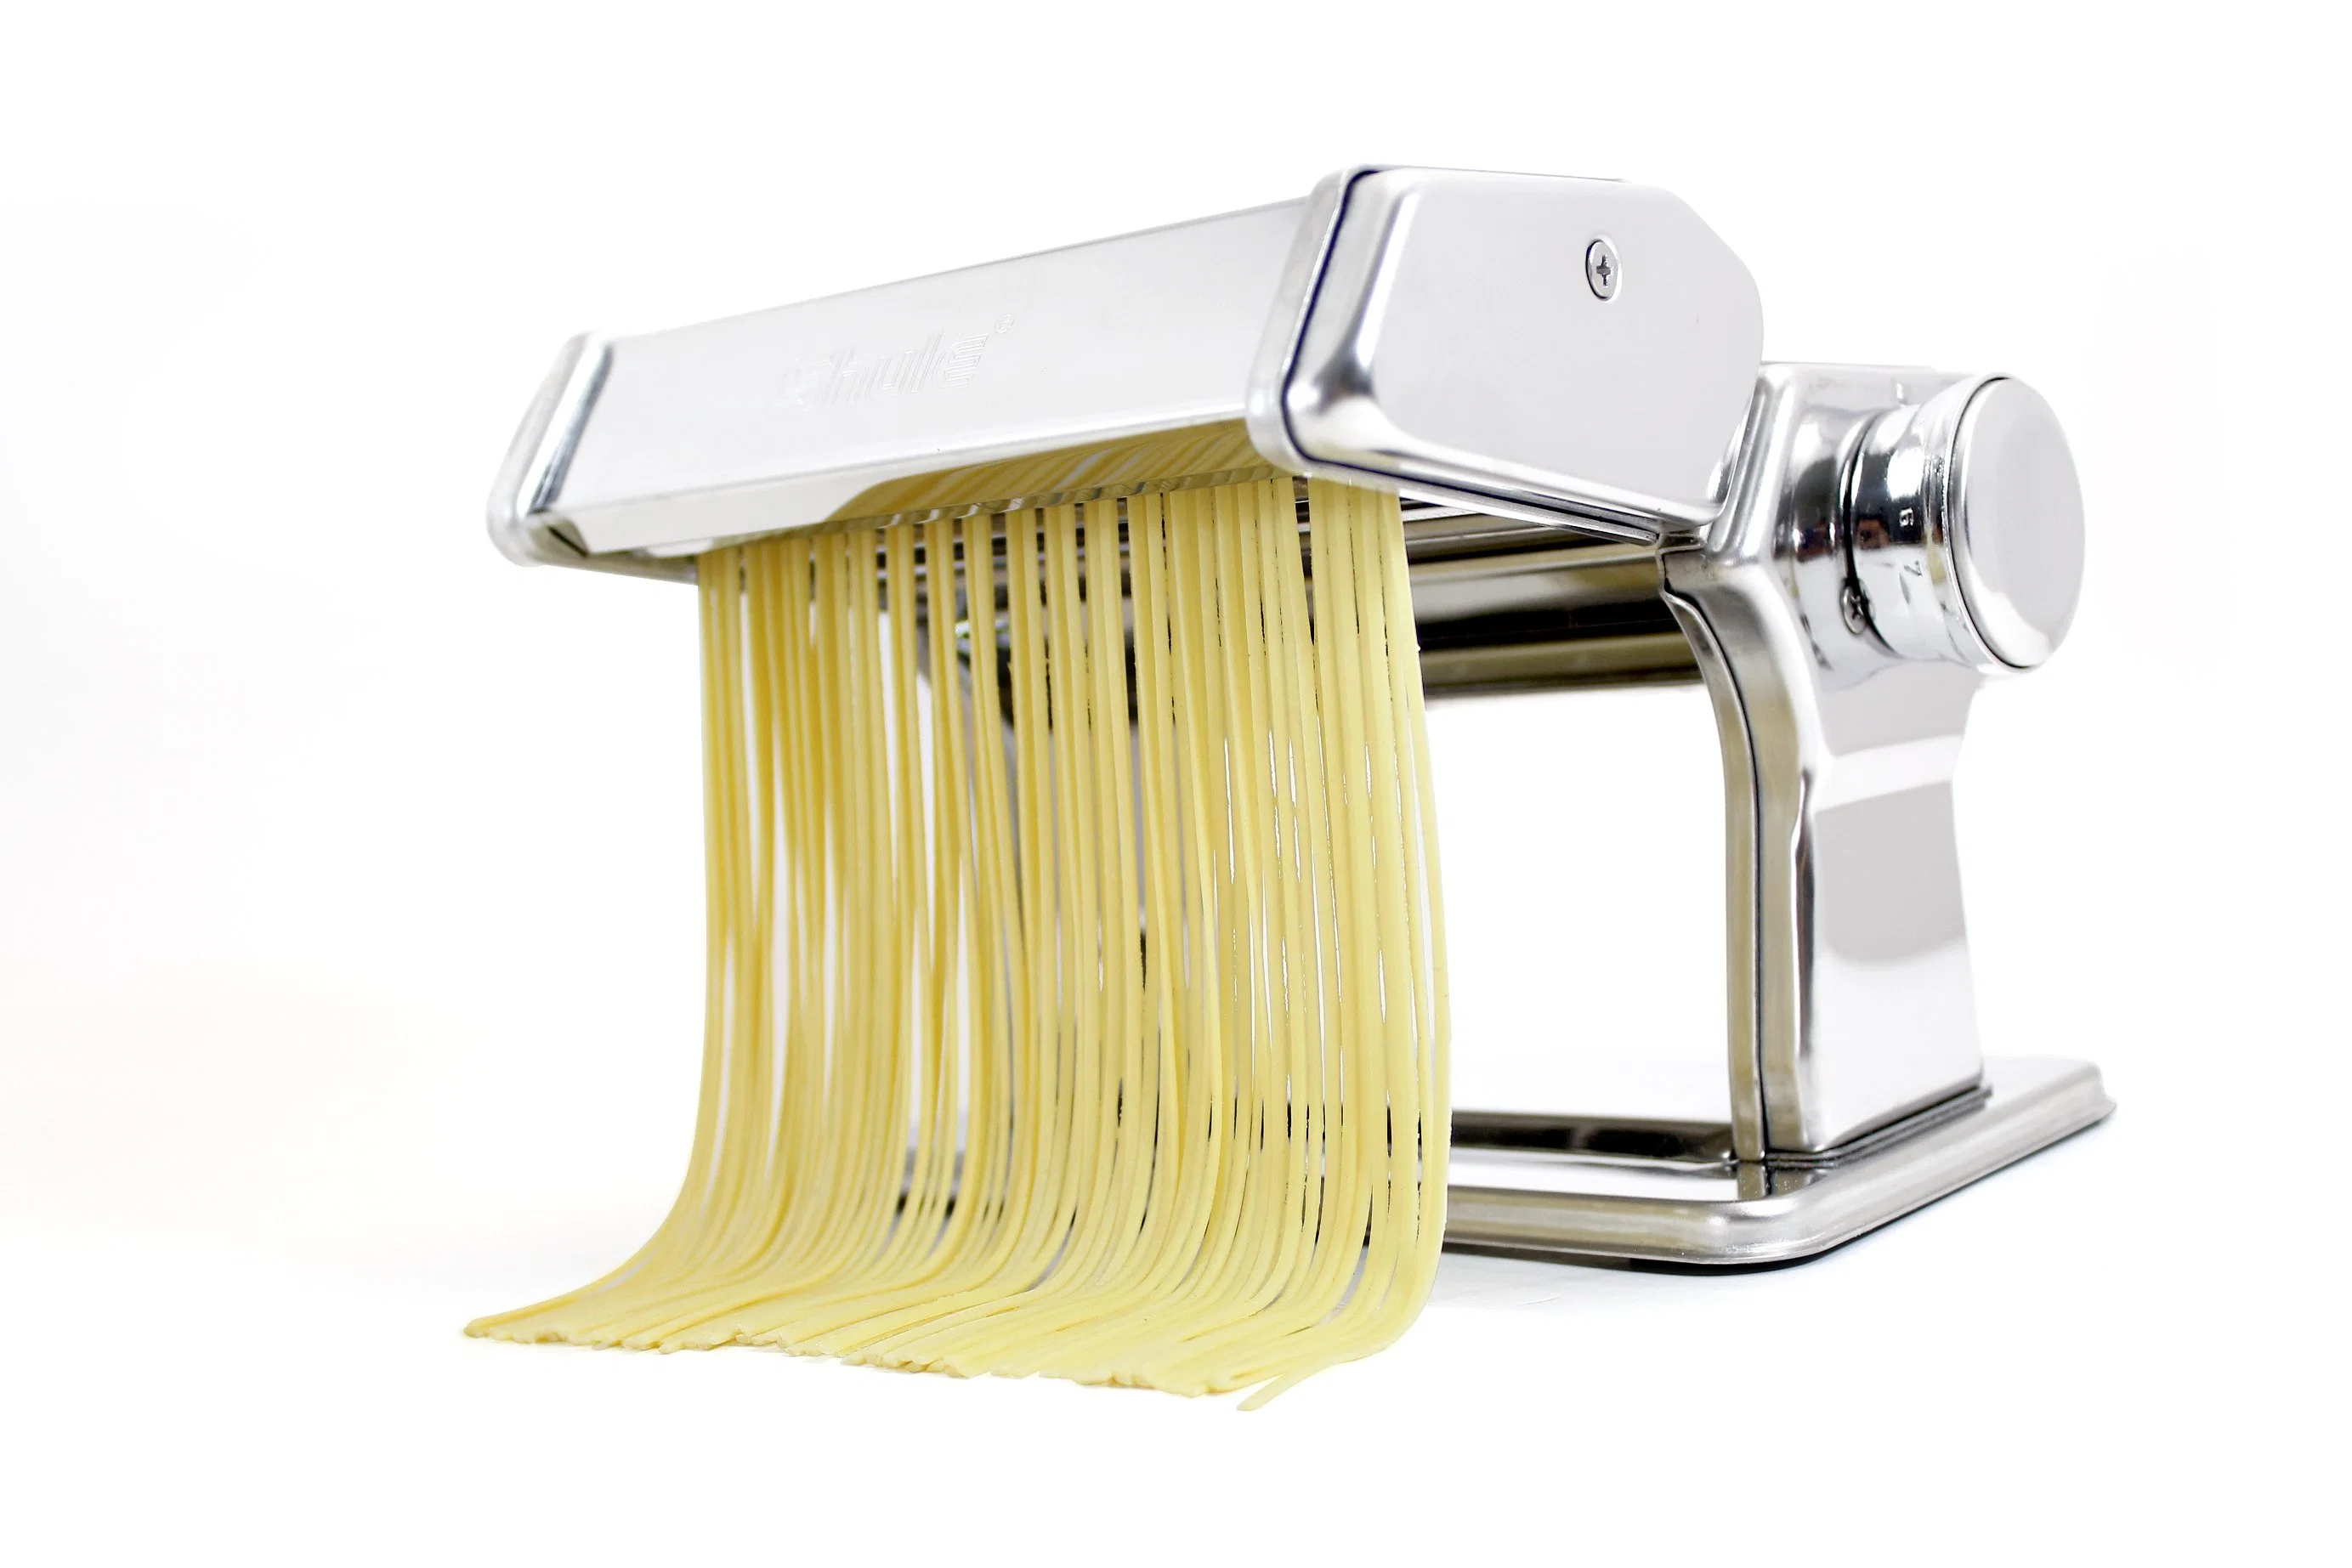 Acero inoxidable implementos de cocina para hacer pasta fresca